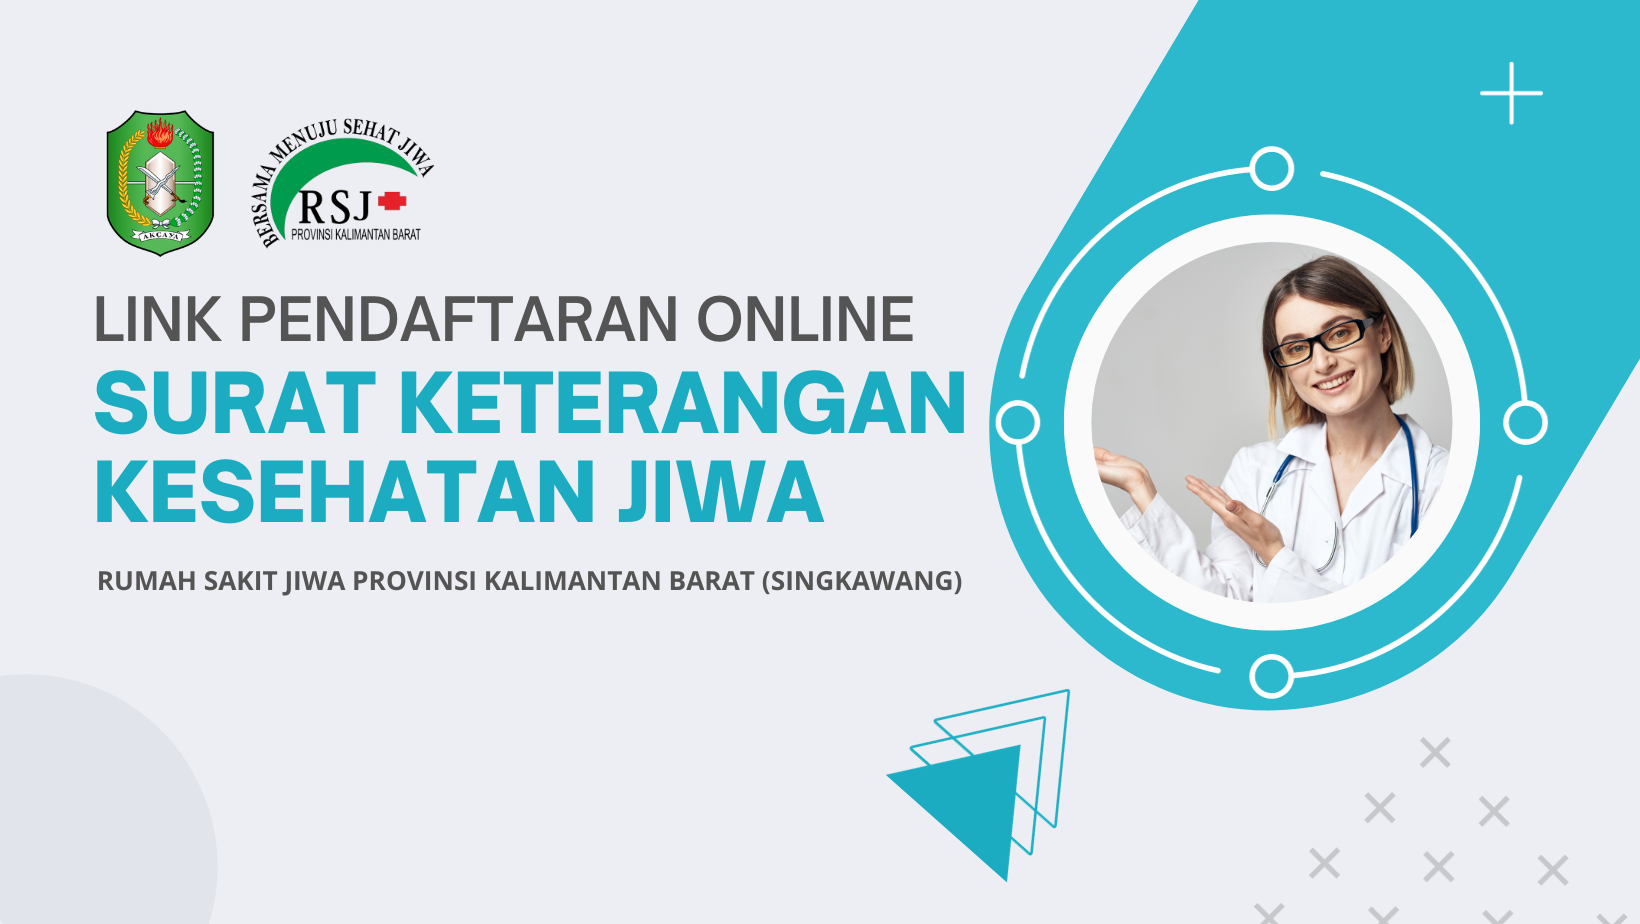 Link Pendaftaran Online Pembuatan SKKJ (Surat Keterangan Kesehatan Jiwa) di RSJ Singkawang